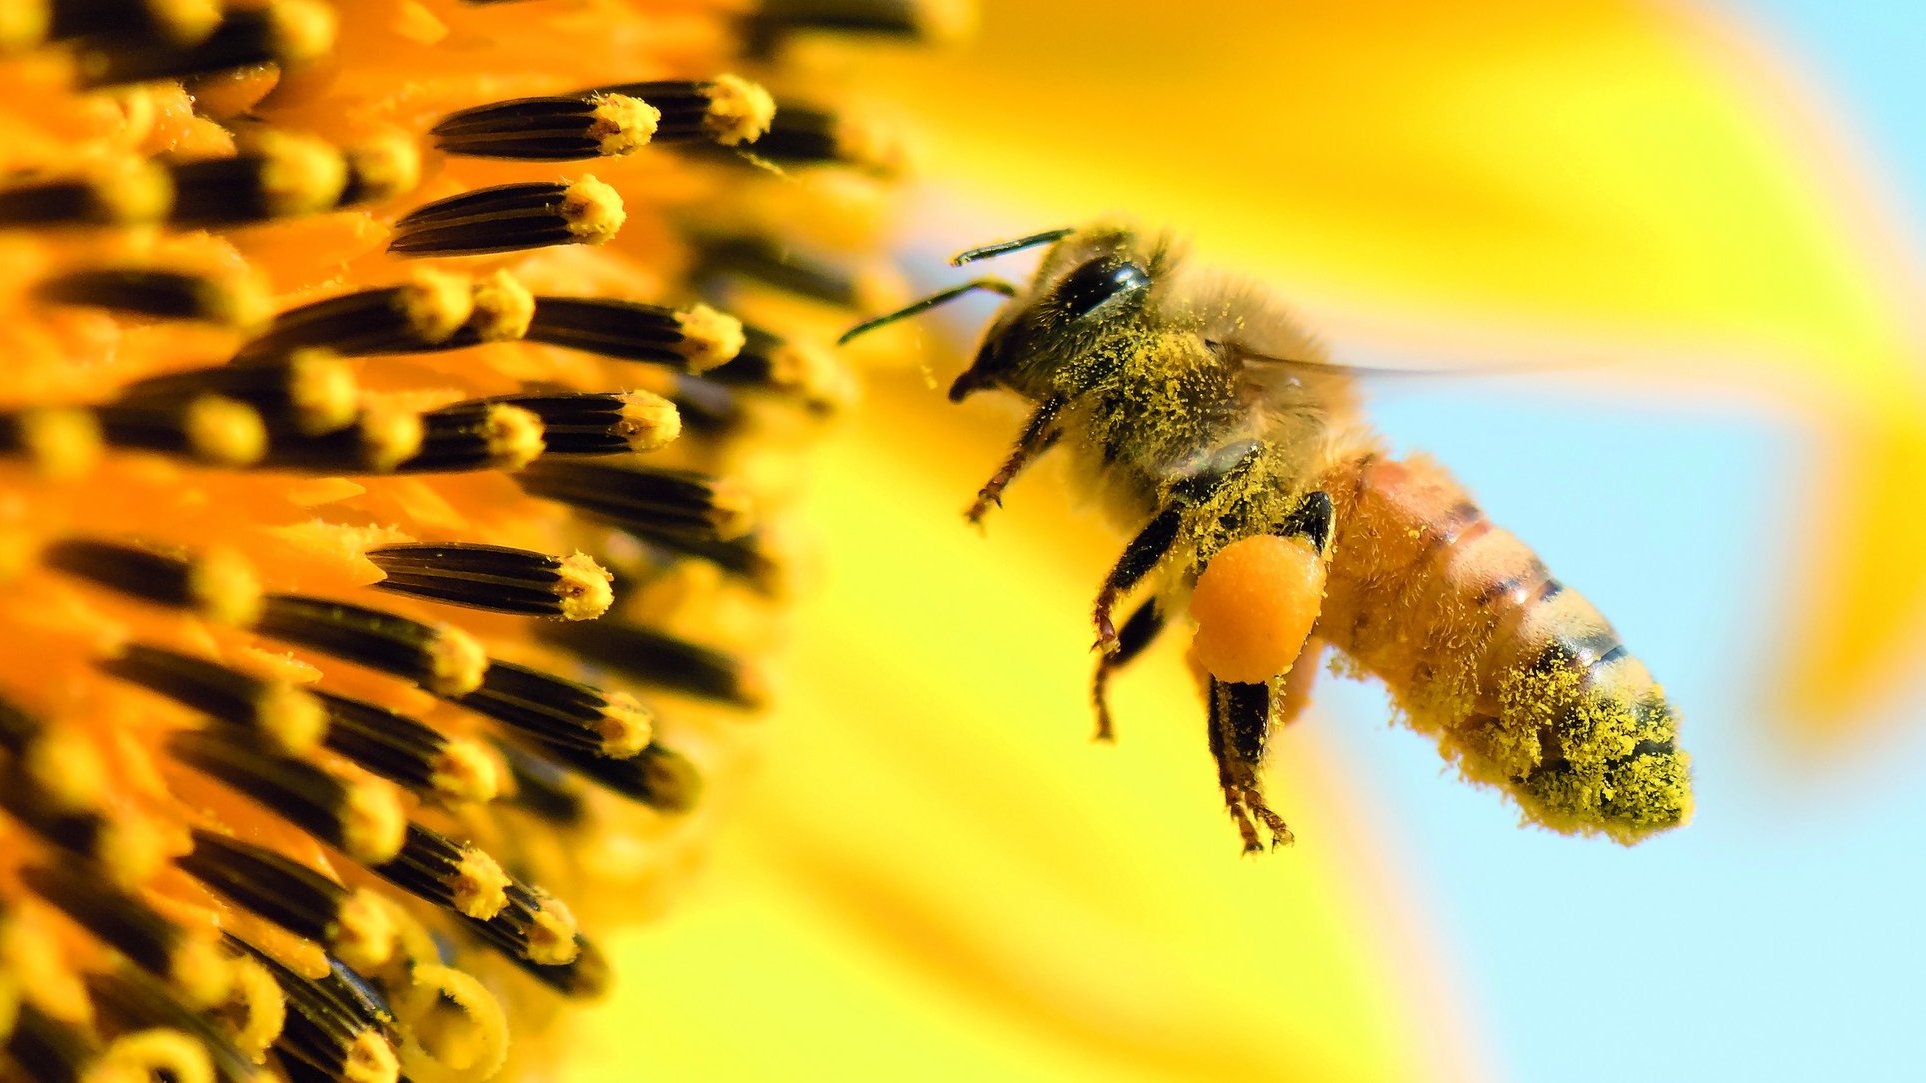 Lebensraum für Honig- und Wildbienen